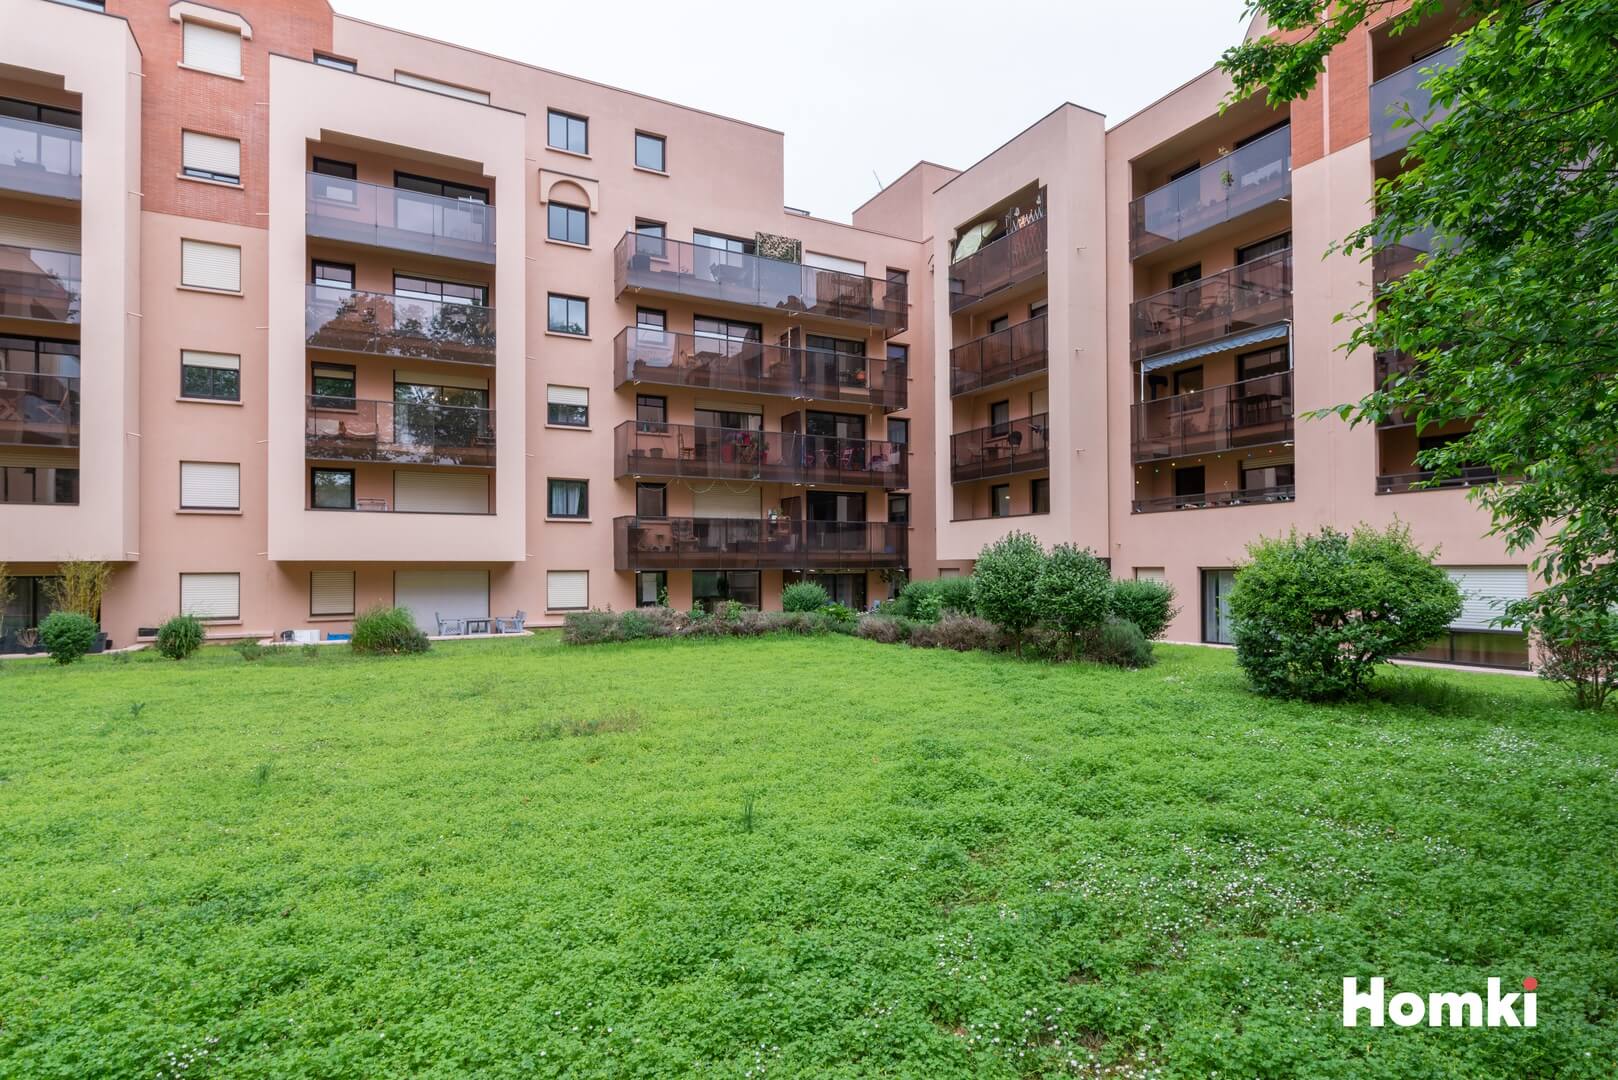 Homki - Vente Appartement  de 56.0 m² à Toulouse 31400